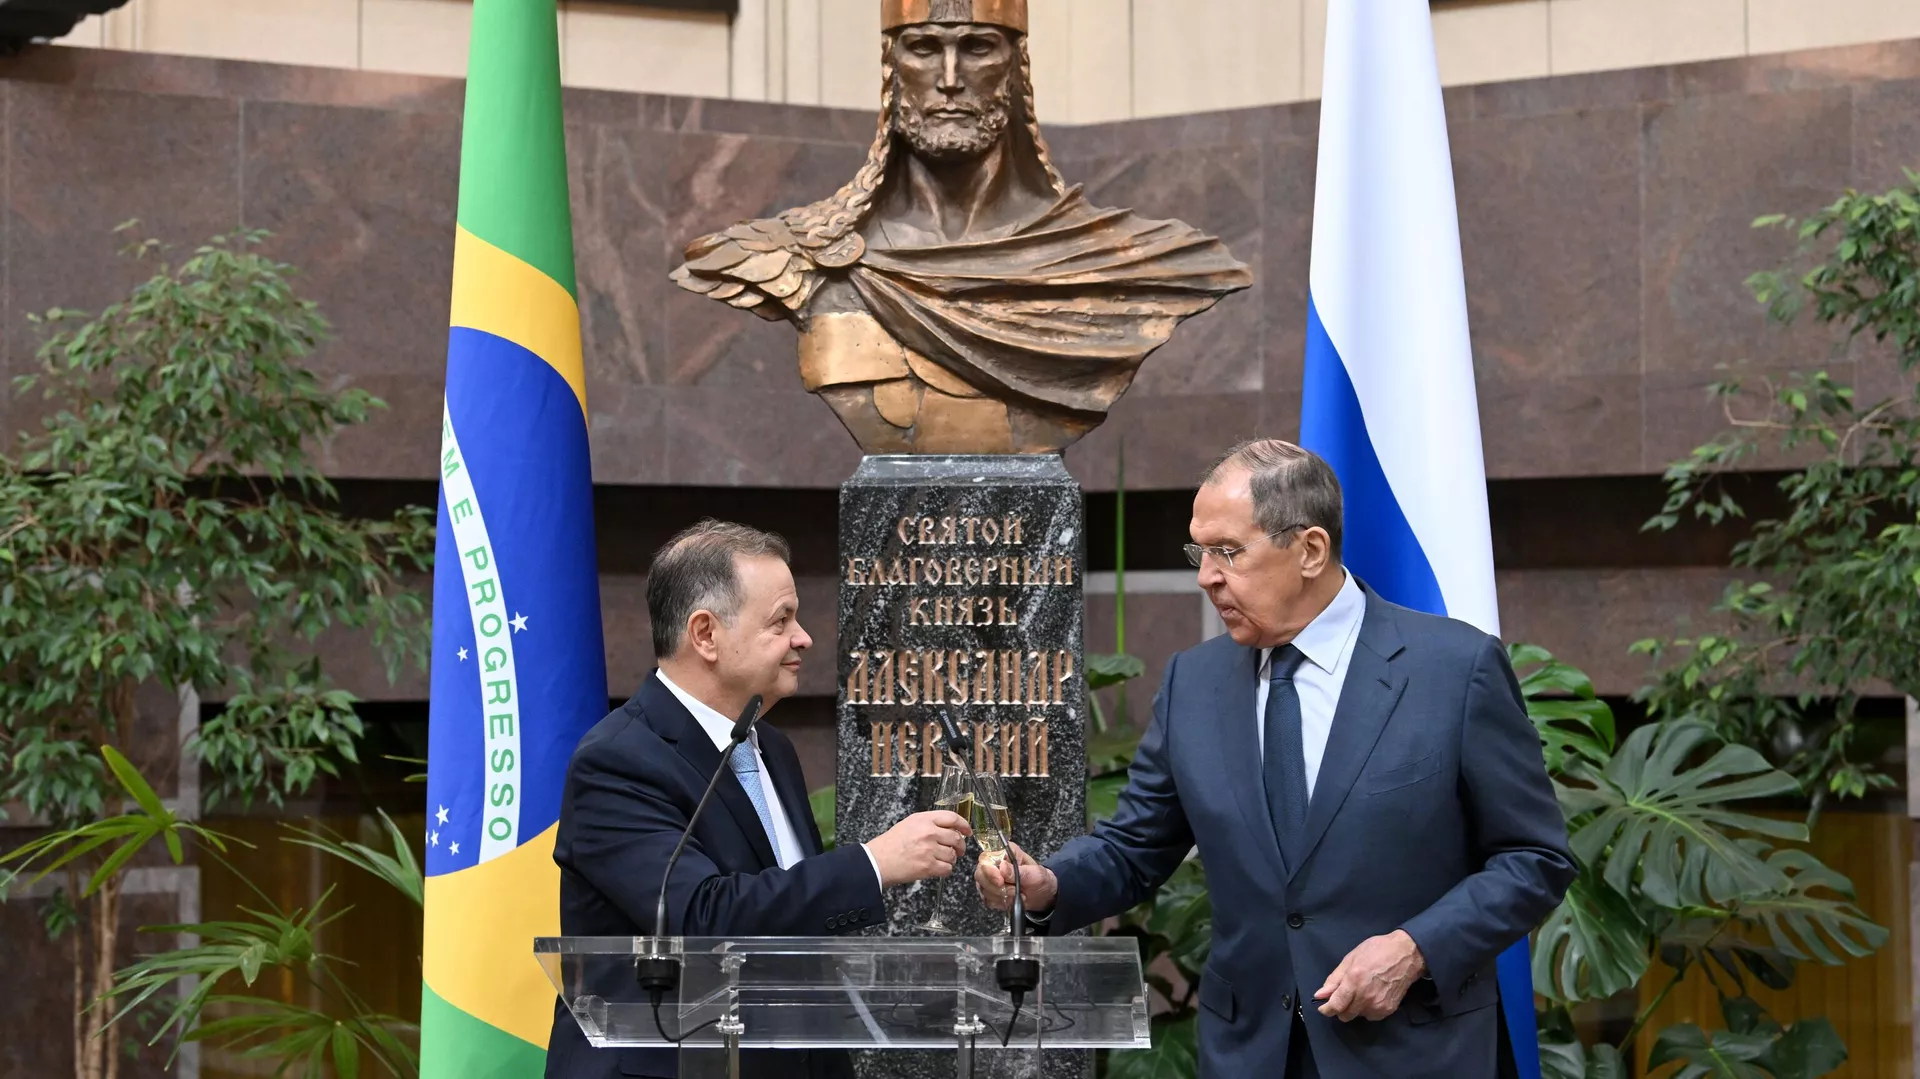 Embaixador do Brasil na Rússia, Rodrigo de Lima Baena Soares (à esquerda), e o ministro das Relações Exteriores da Rússia, Sergei Lavrov (à direita). Foto: © Sputnik / Roman Pyatakov